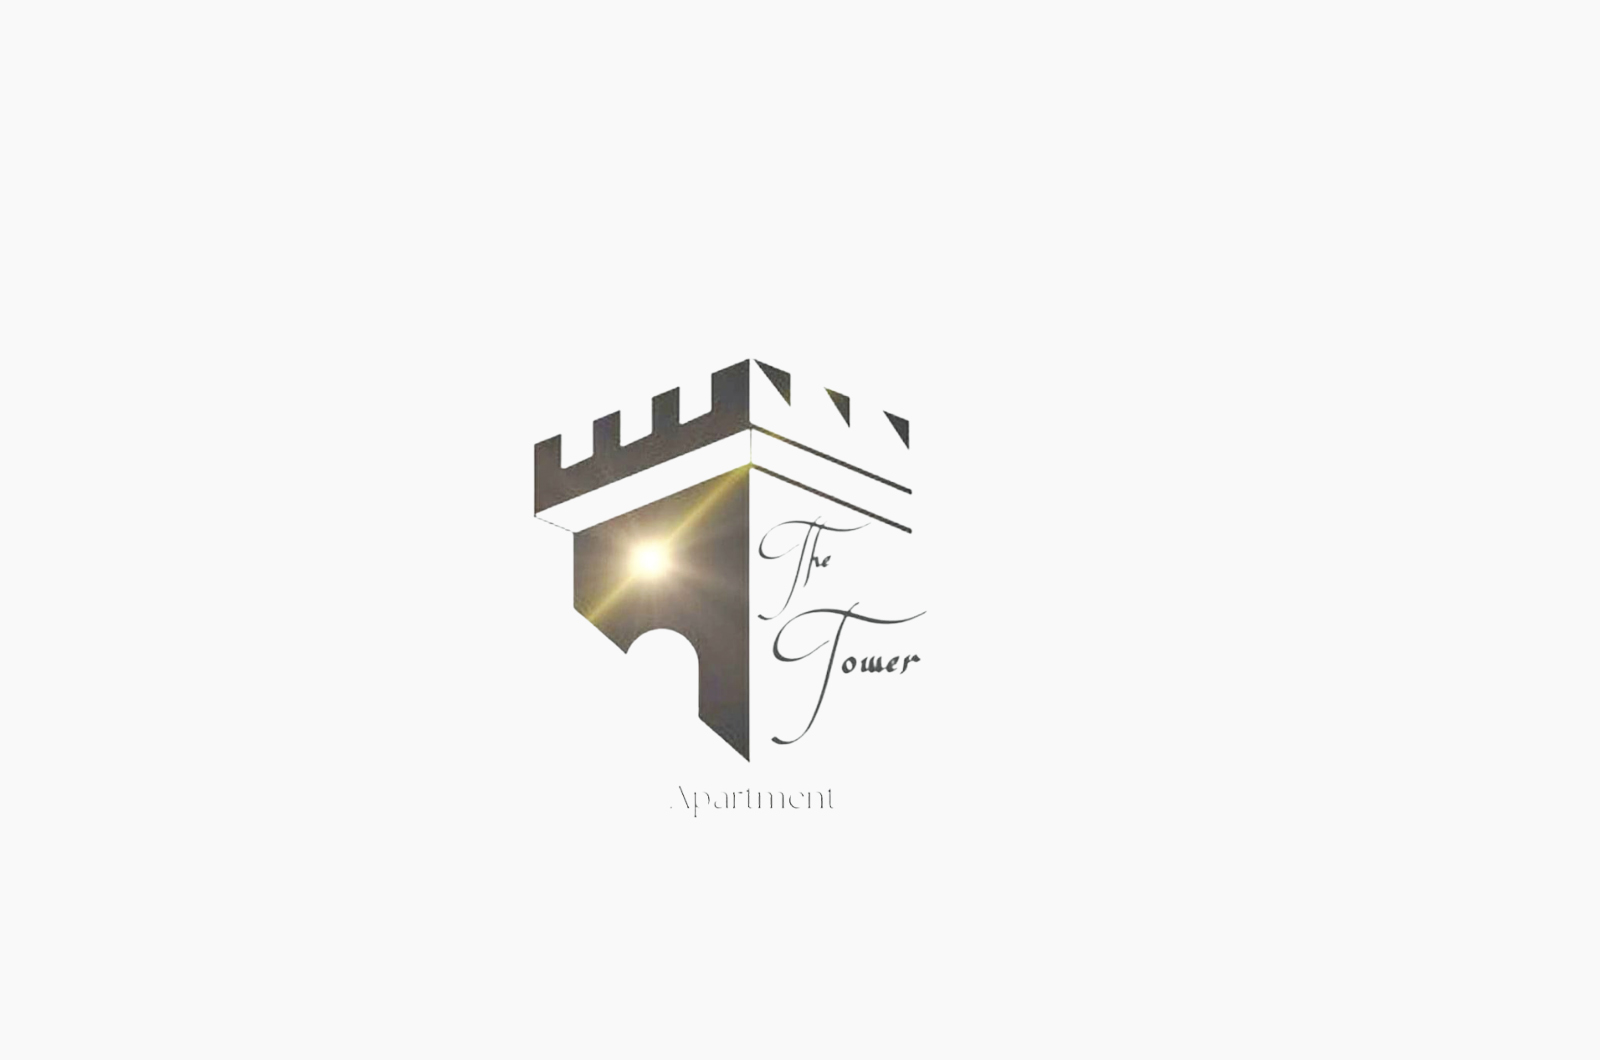 Consulenza Social Media e Brand Identity per “The tower apartment”